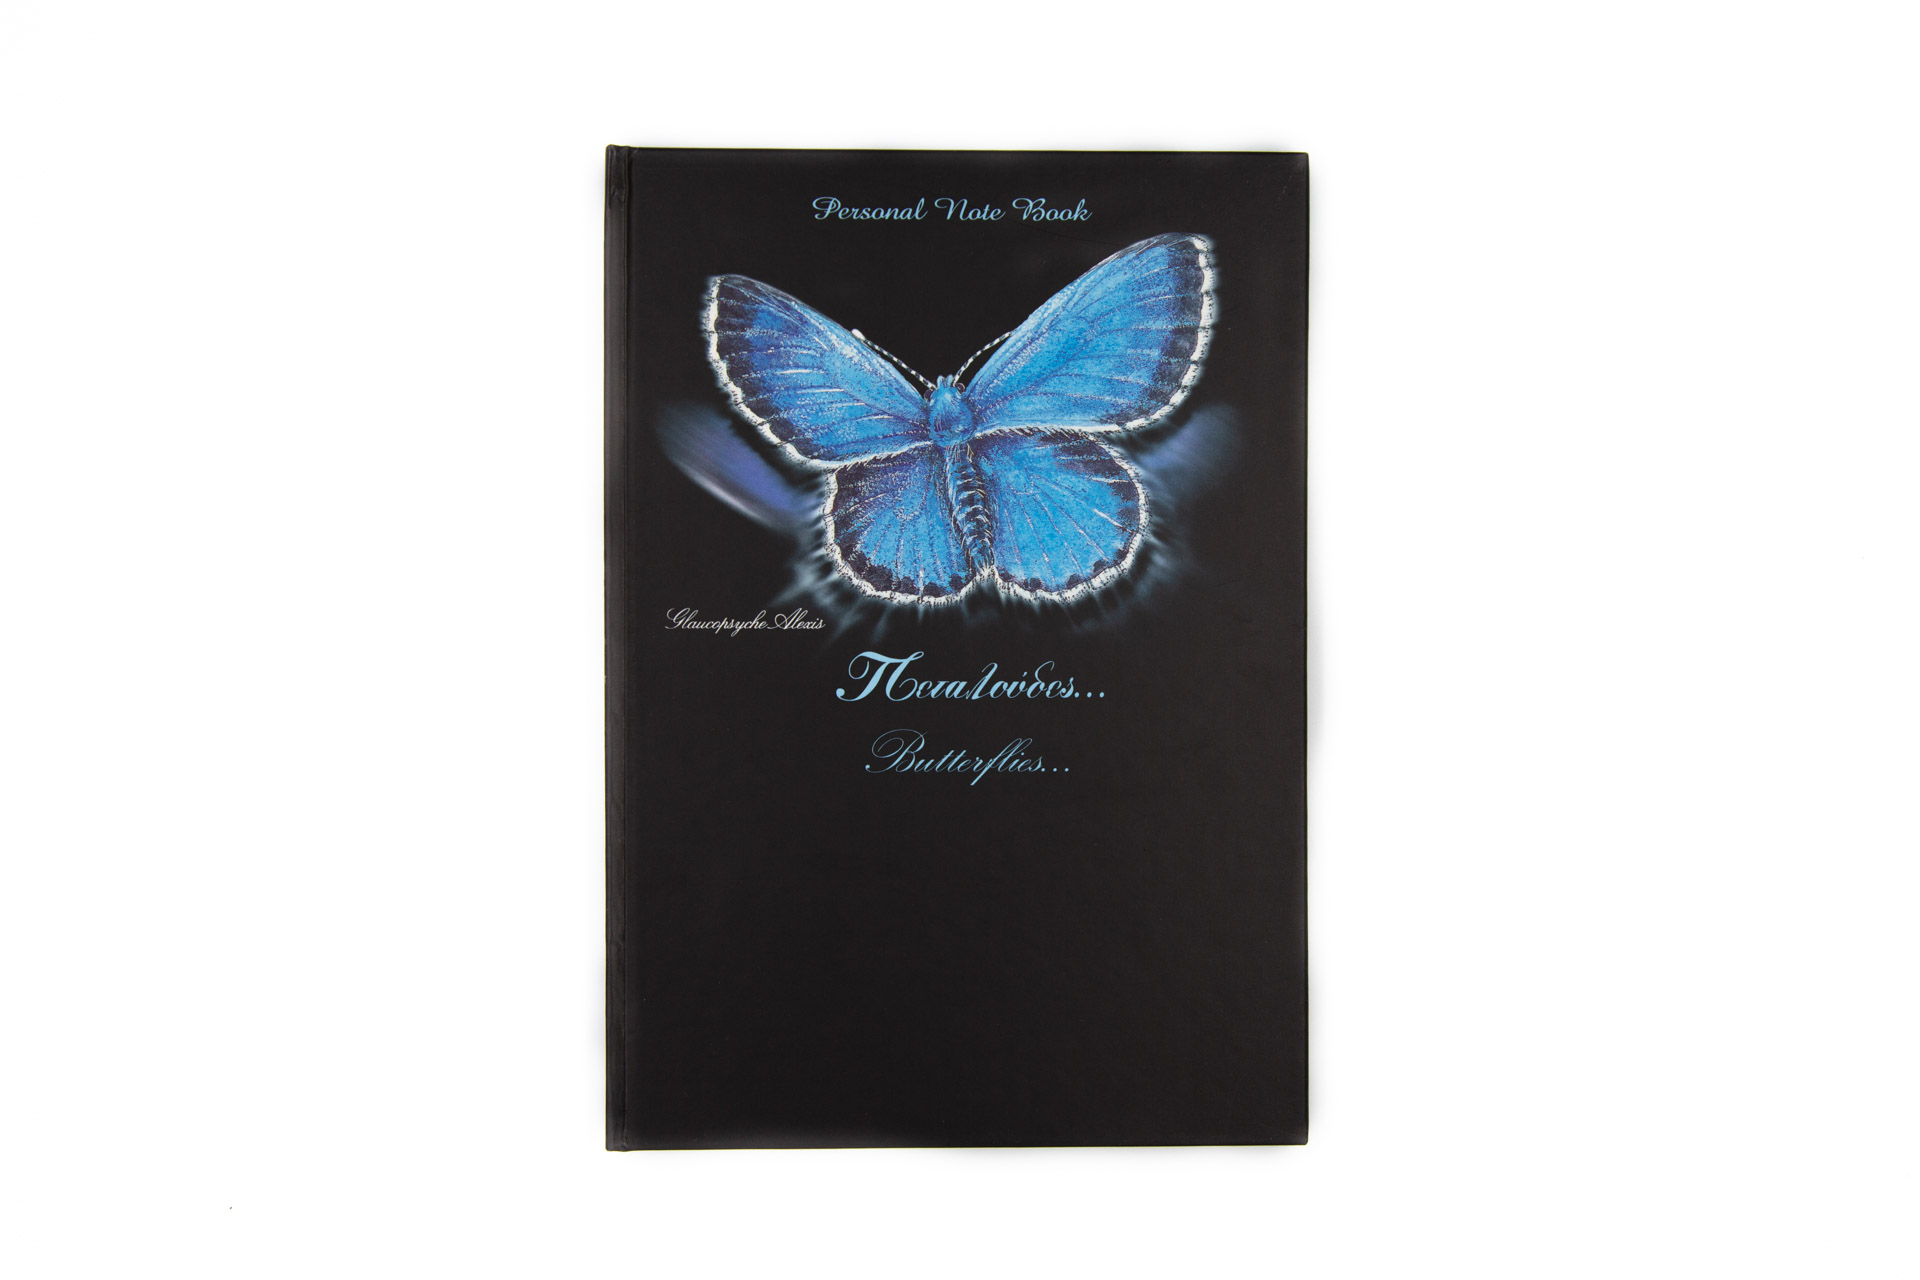 Personal notebook "Butterflies" - Front